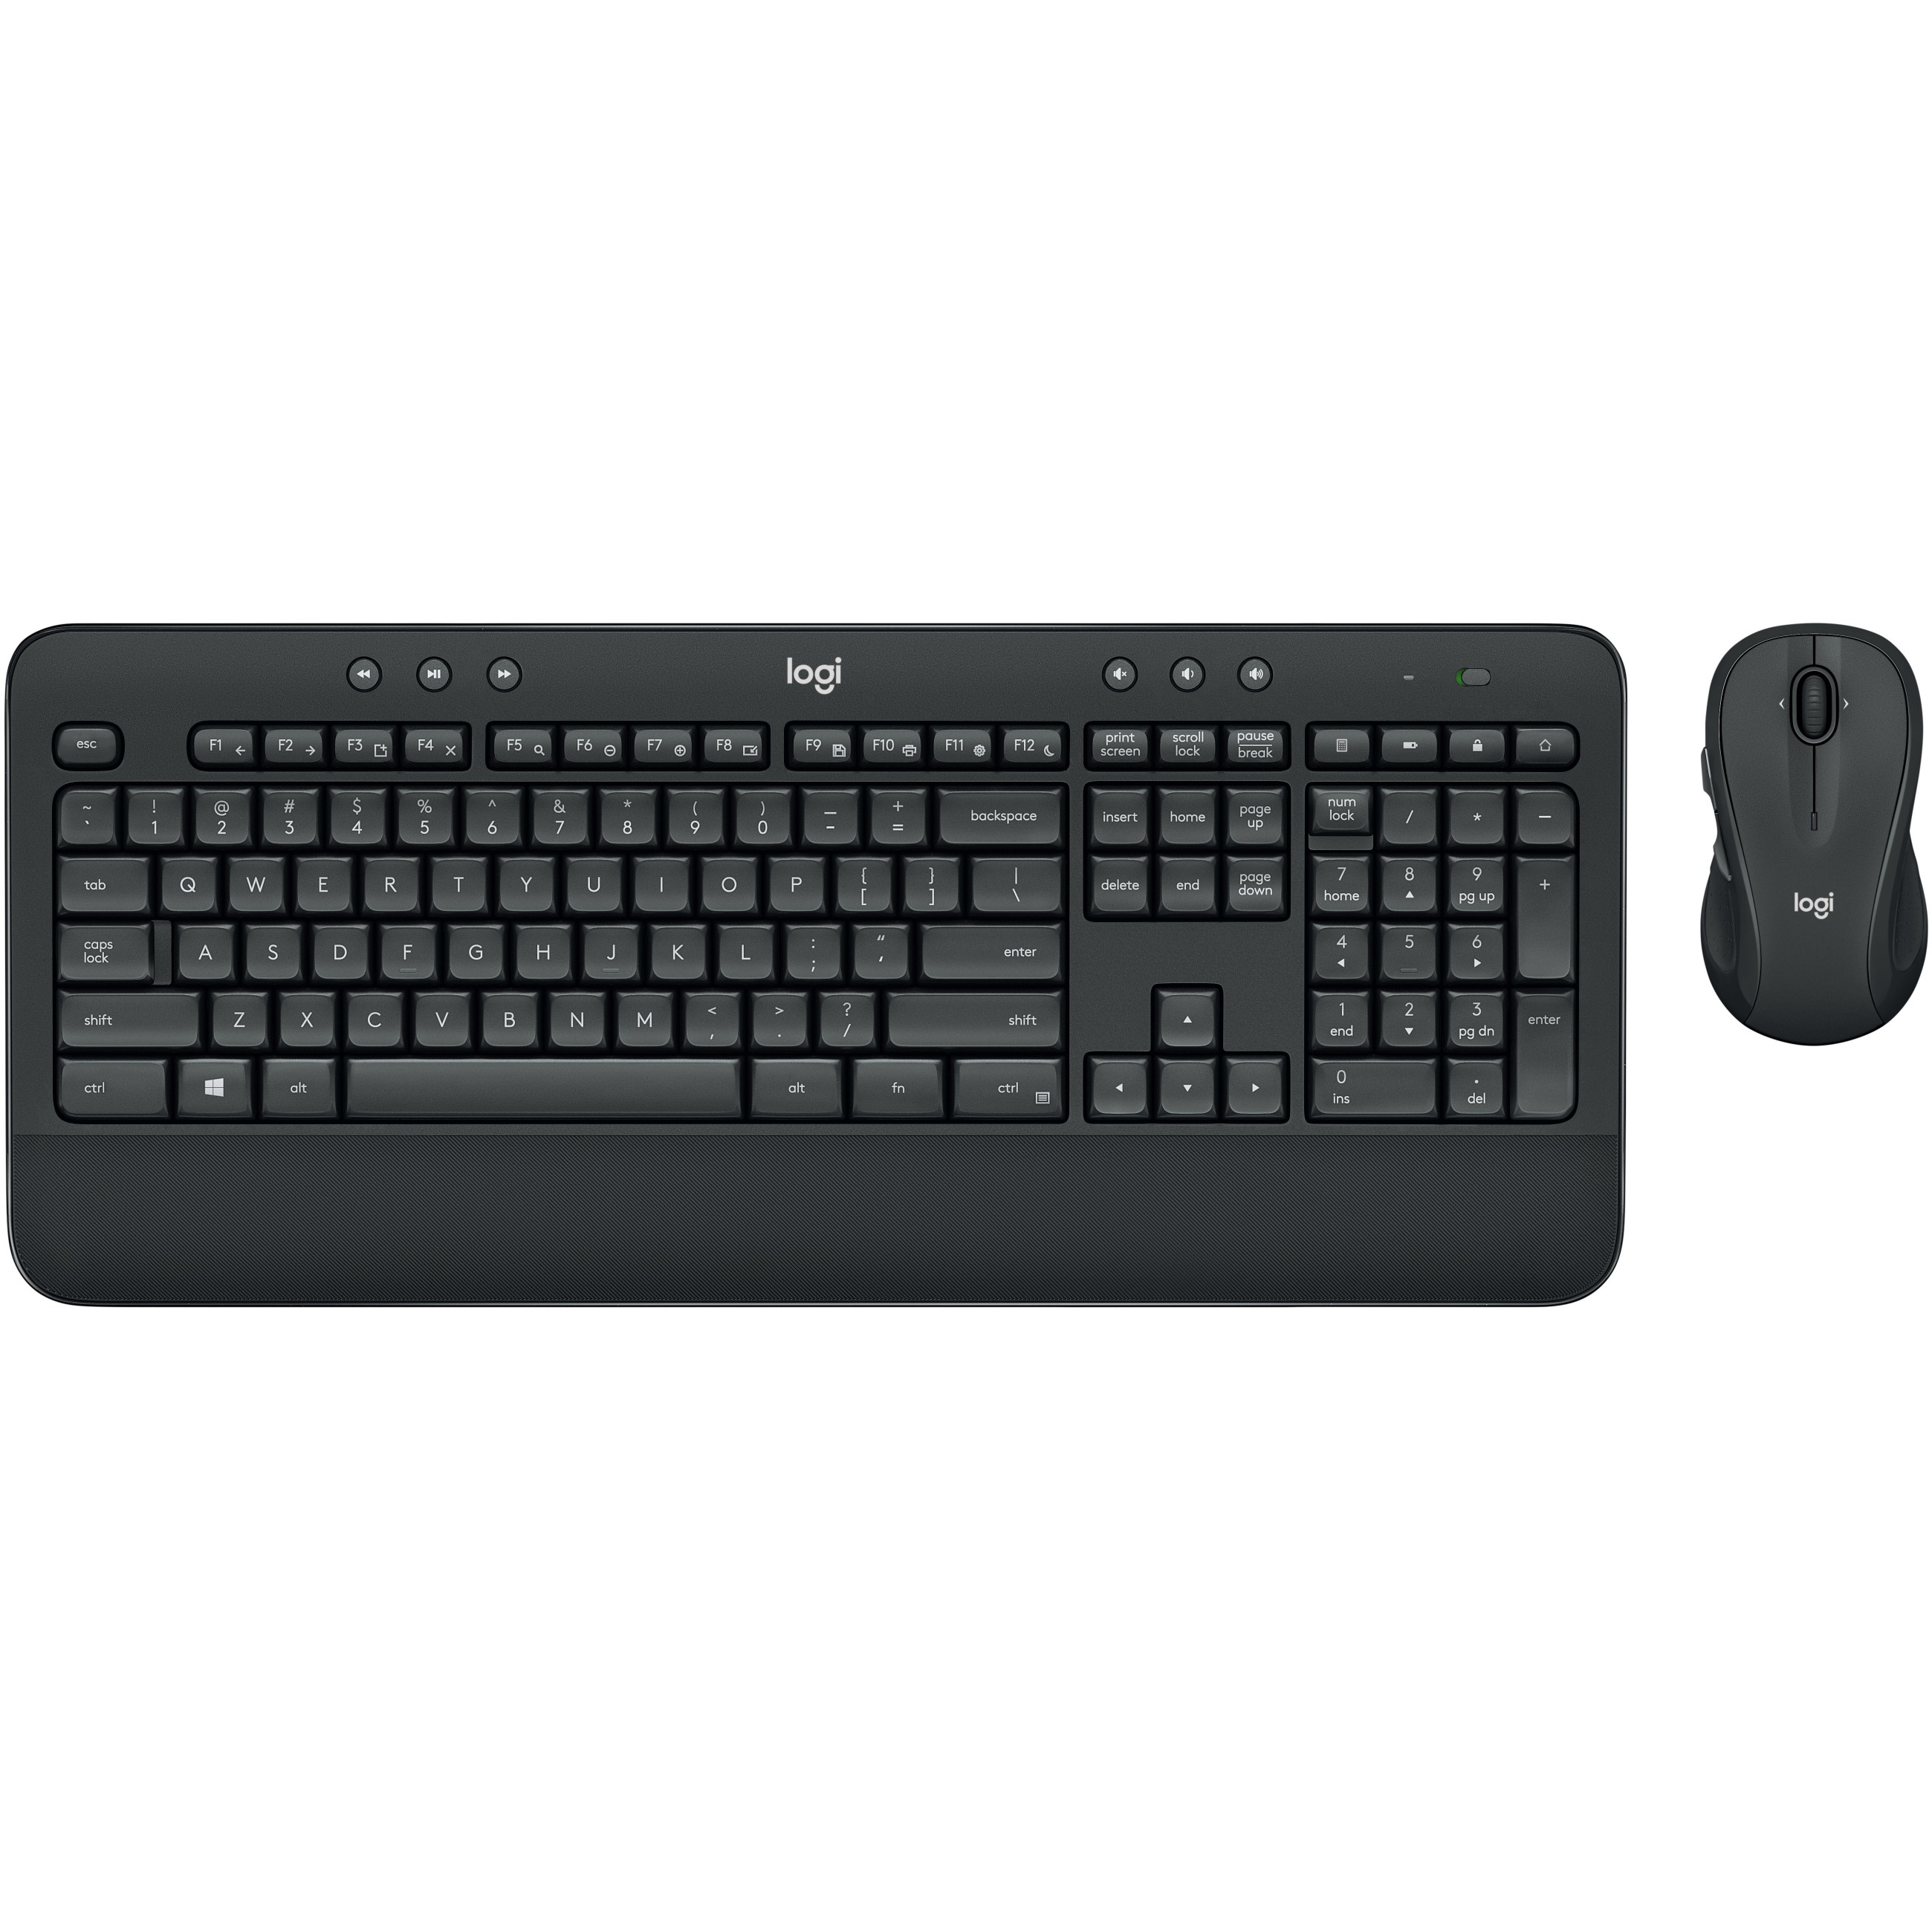 Logitech MK545 ADVANCED Wireless Keyboard and Mouse Combo Tastatur USB QWERTZ Deutsch Schwarz